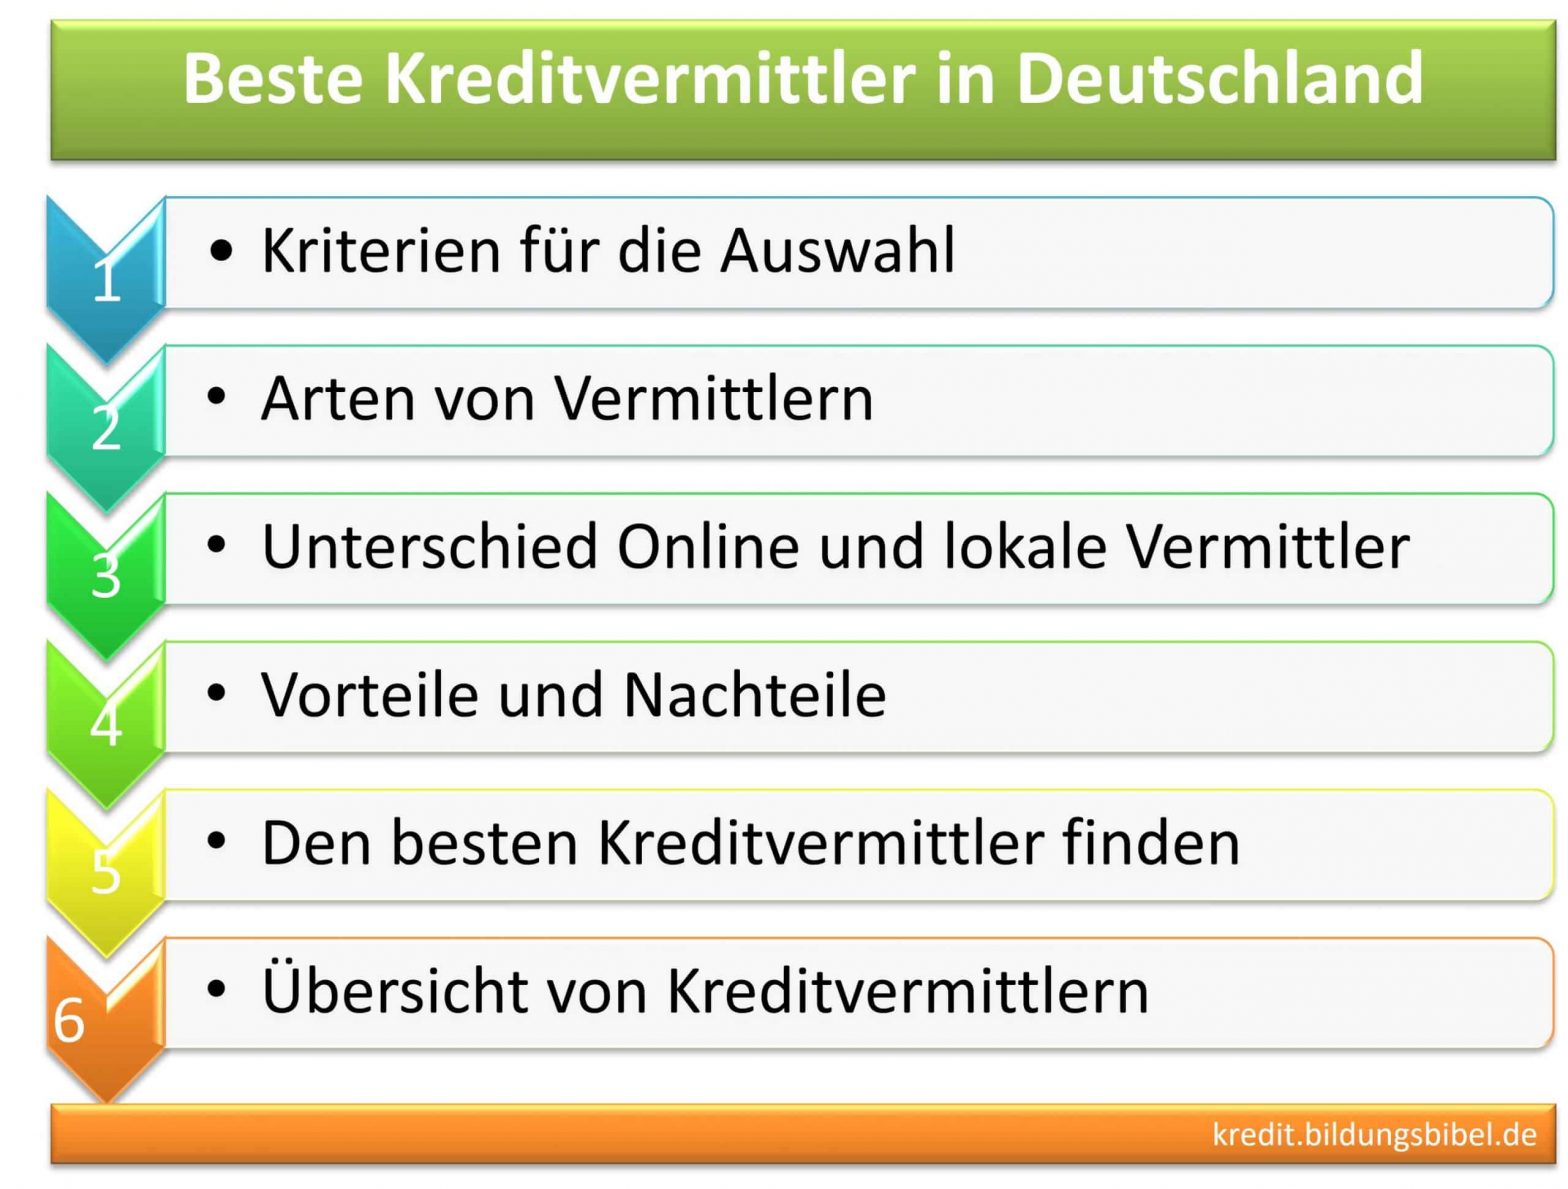 Beste Kreditvermittler in Deutschland finden, Kriterien, Arten, Unterschiede, Vorteile, Nachteile, gute und seriöse Vermittler.